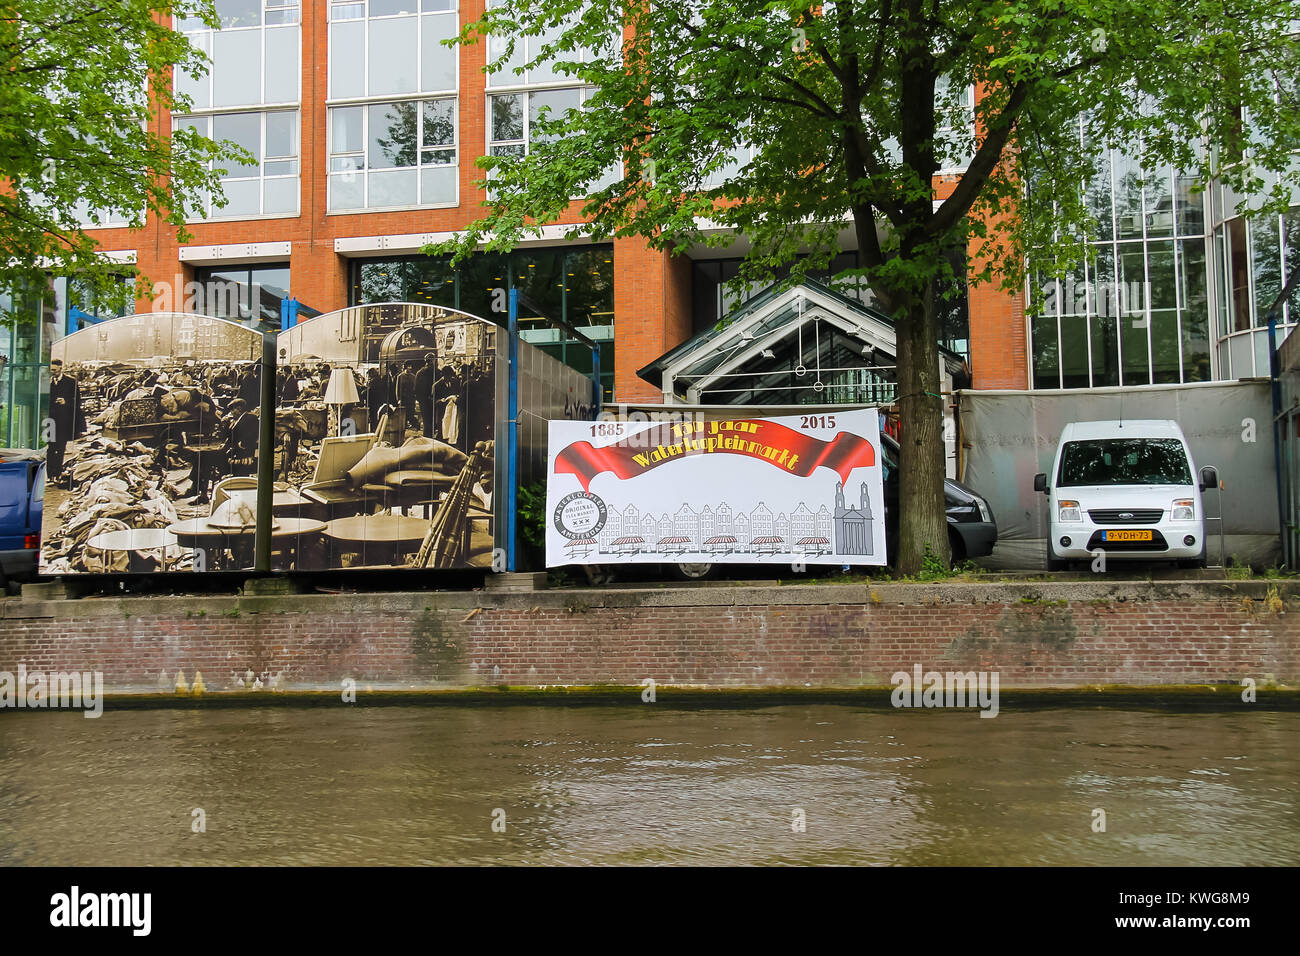 Amsterdam, Holanda - Junio 20, 2015: el comercio stands en el mercado Waterlooplein decoradas fotos históricas. Amsterdam Foto de stock